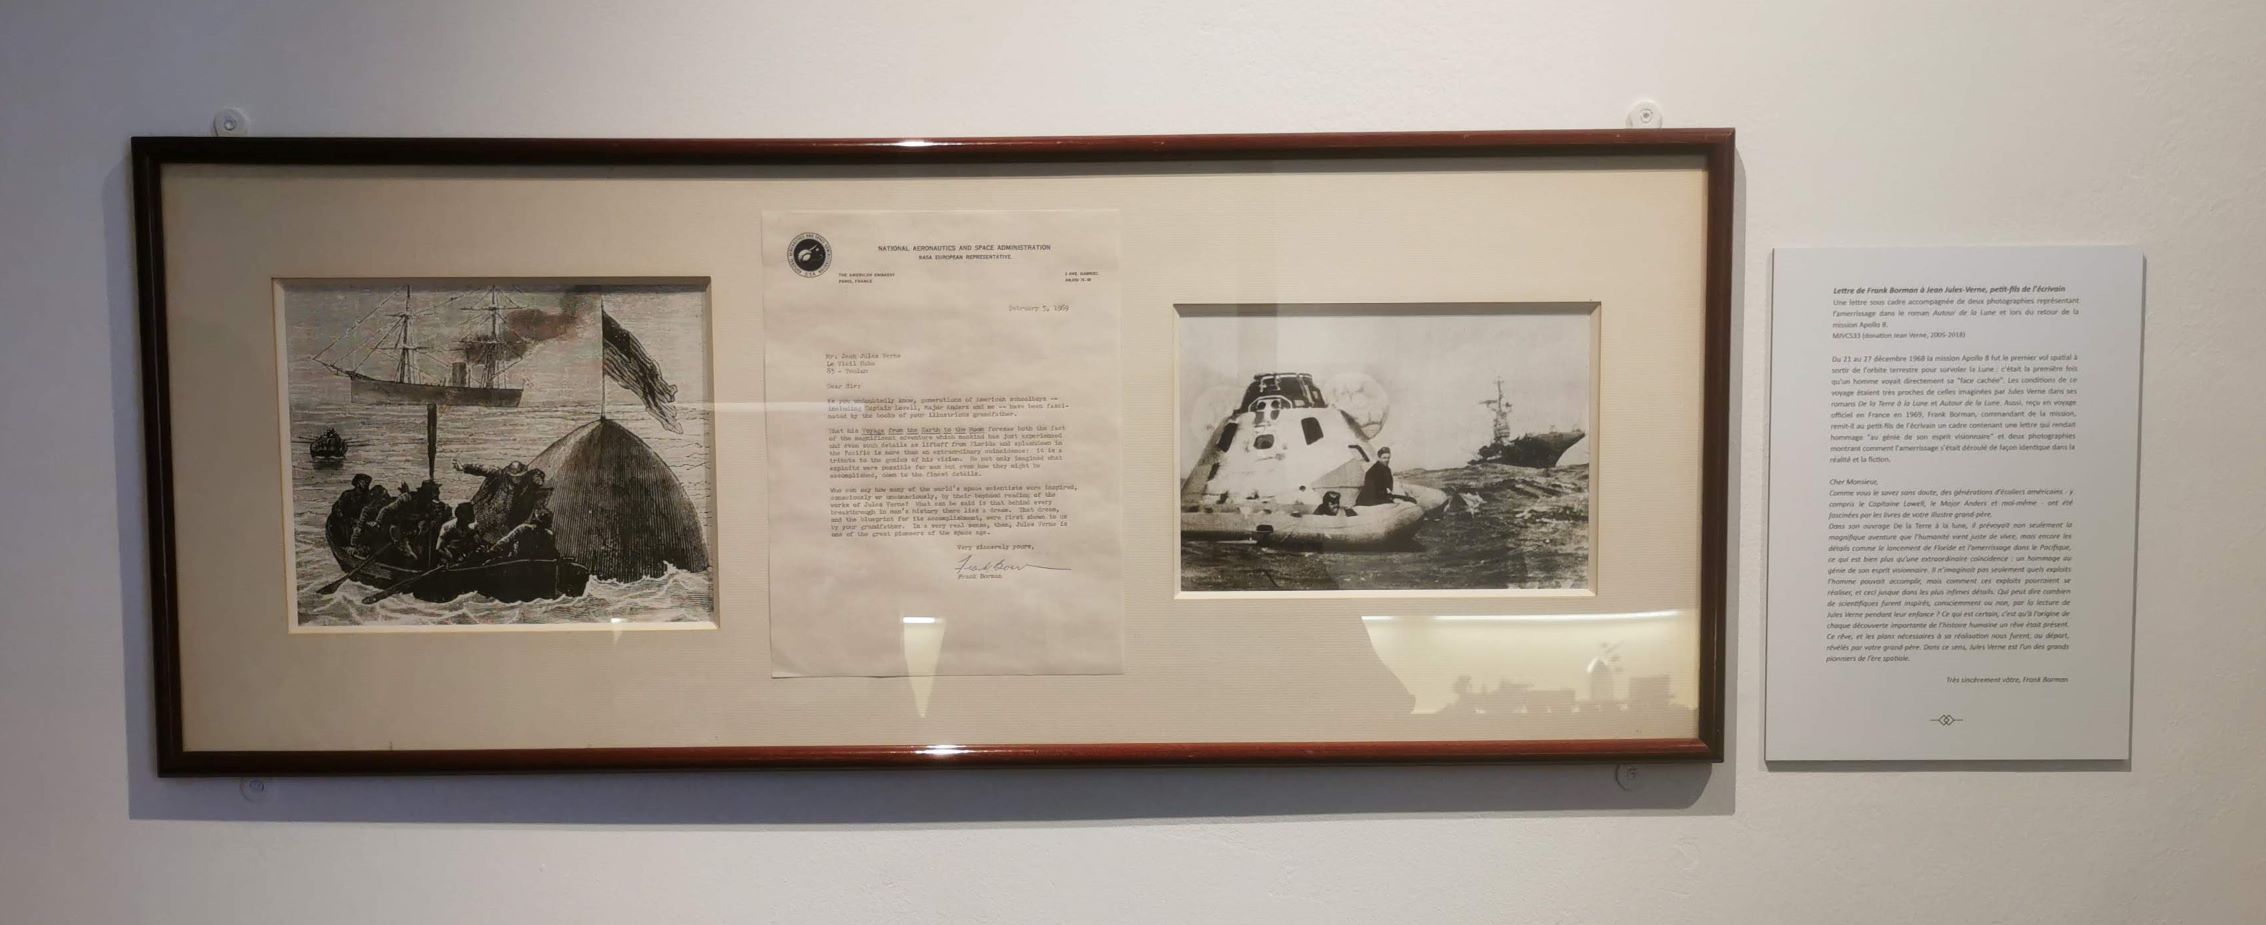 Ez egy levél Frank Bormantól, a Gemini-7 és az Apollo-8 parancsnokától Verne unokájának, amiben Verne érdemeit méltatja az űrkutatás elindulása terén, mondván sok ember fantáziáját indították be Verne vonatkozó művei.